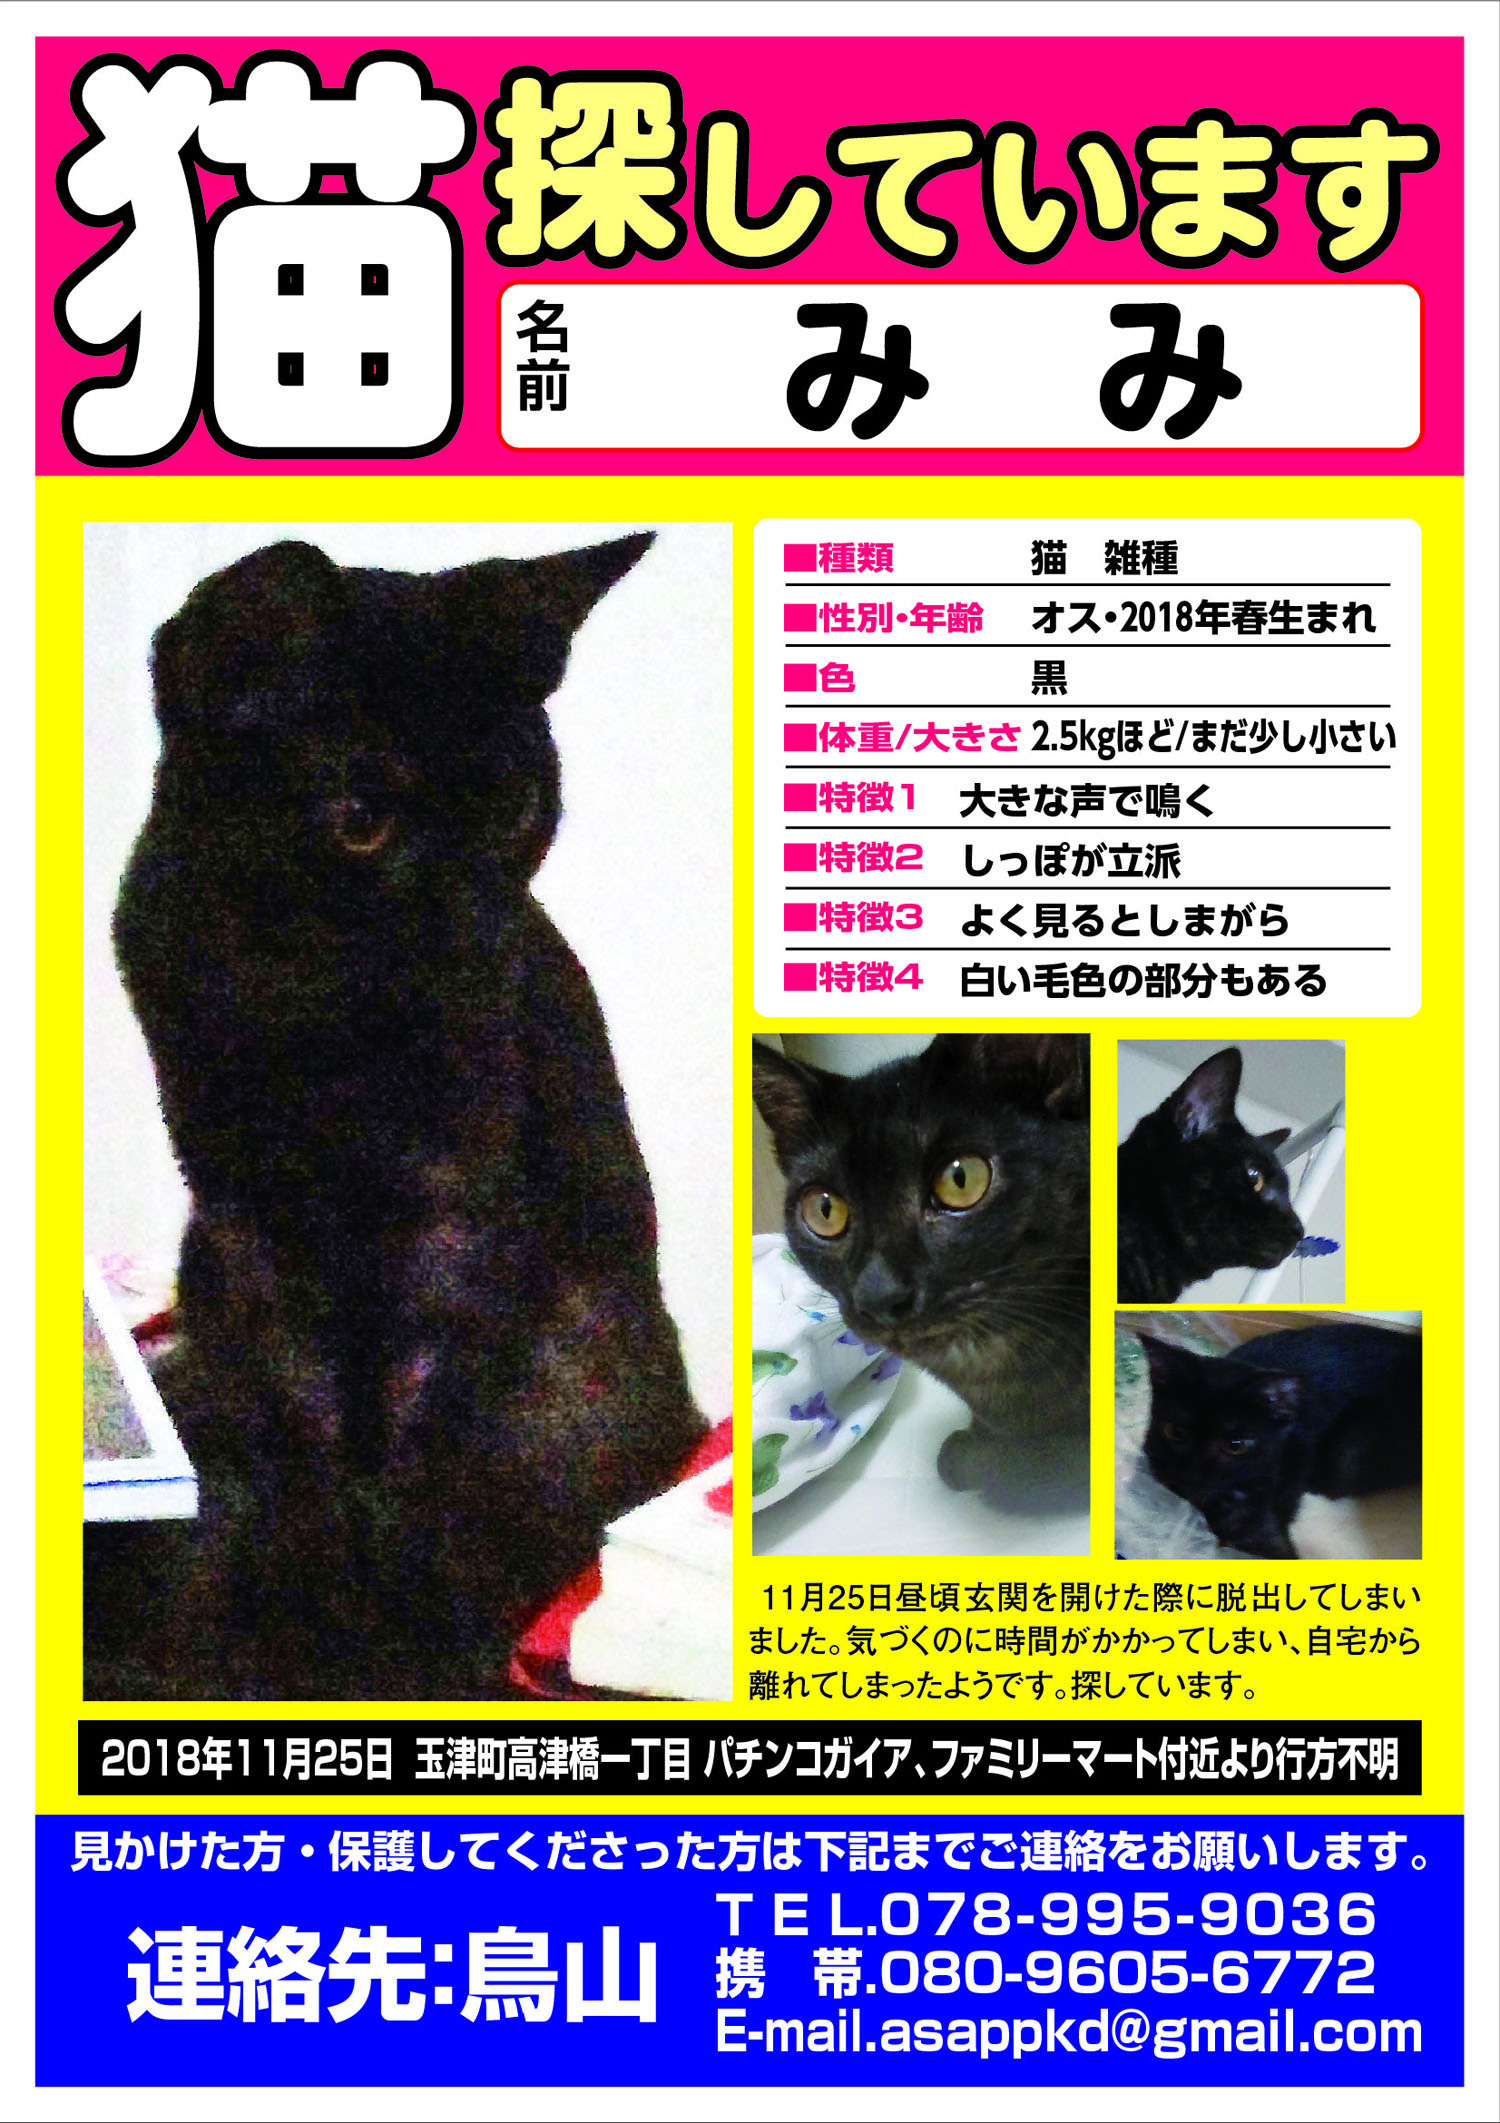 猫 みみ君 を探しています 神戸市西区玉津町高津橋一丁目 ペット捜索チラシ作成の迷子ペット Net